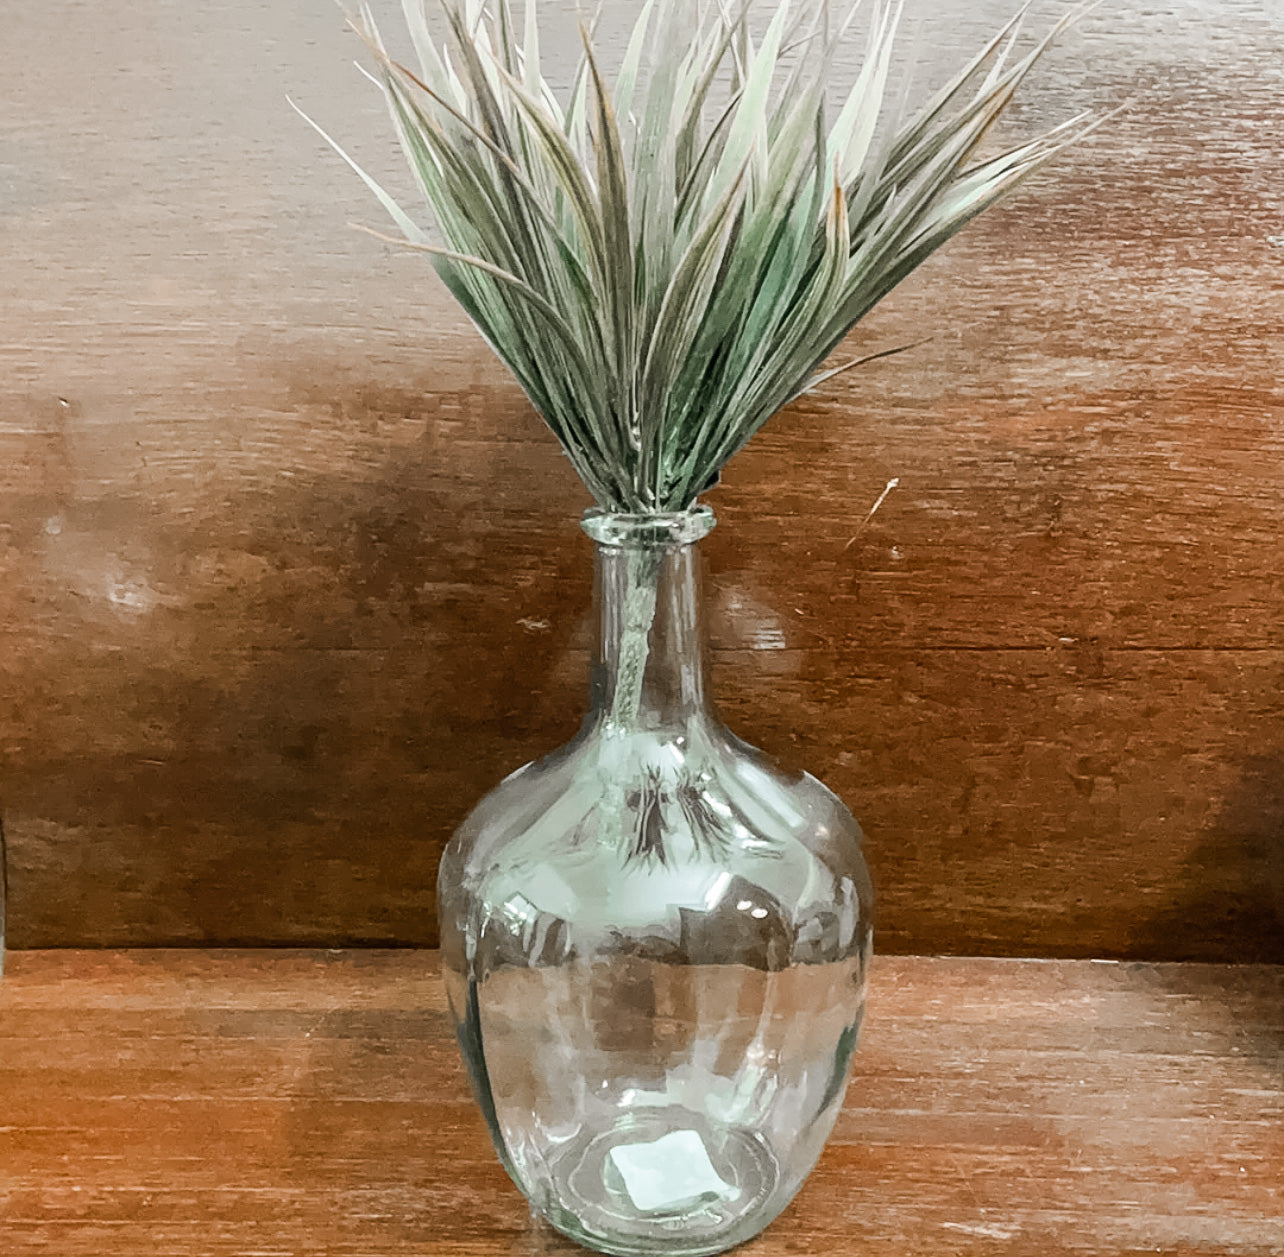 10” Glass Vase